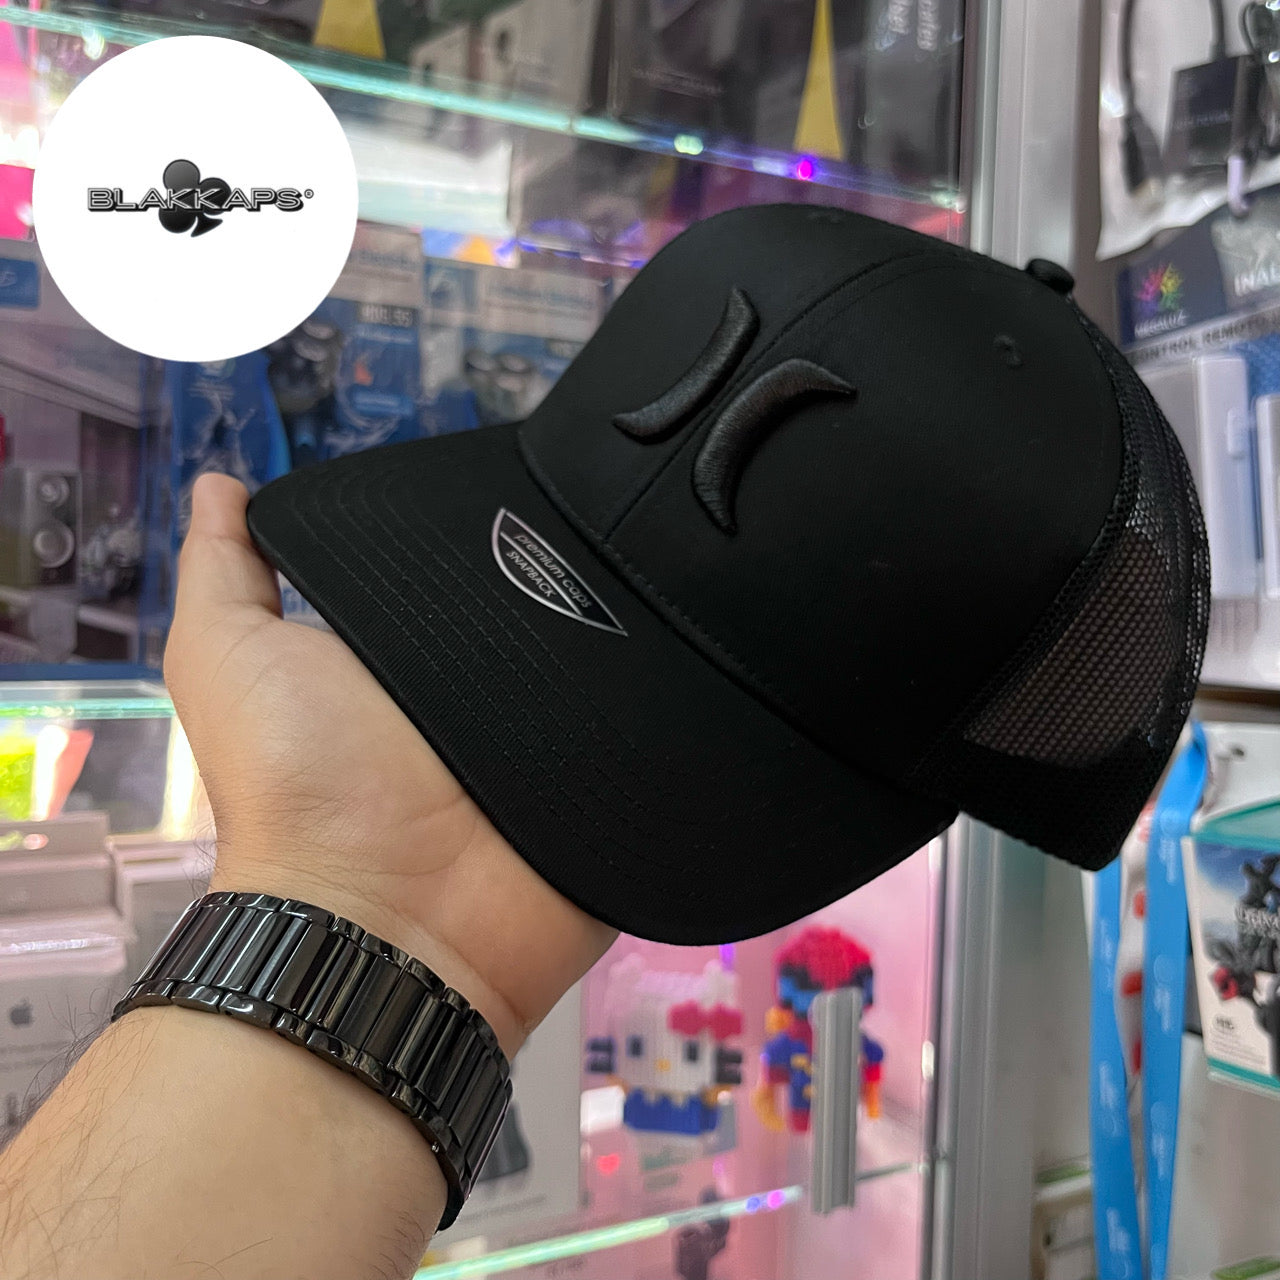 Gorra Negra SINALOA Bordada 3D BLAKKAPS®♣️ – DELED Electronica y Accesorios